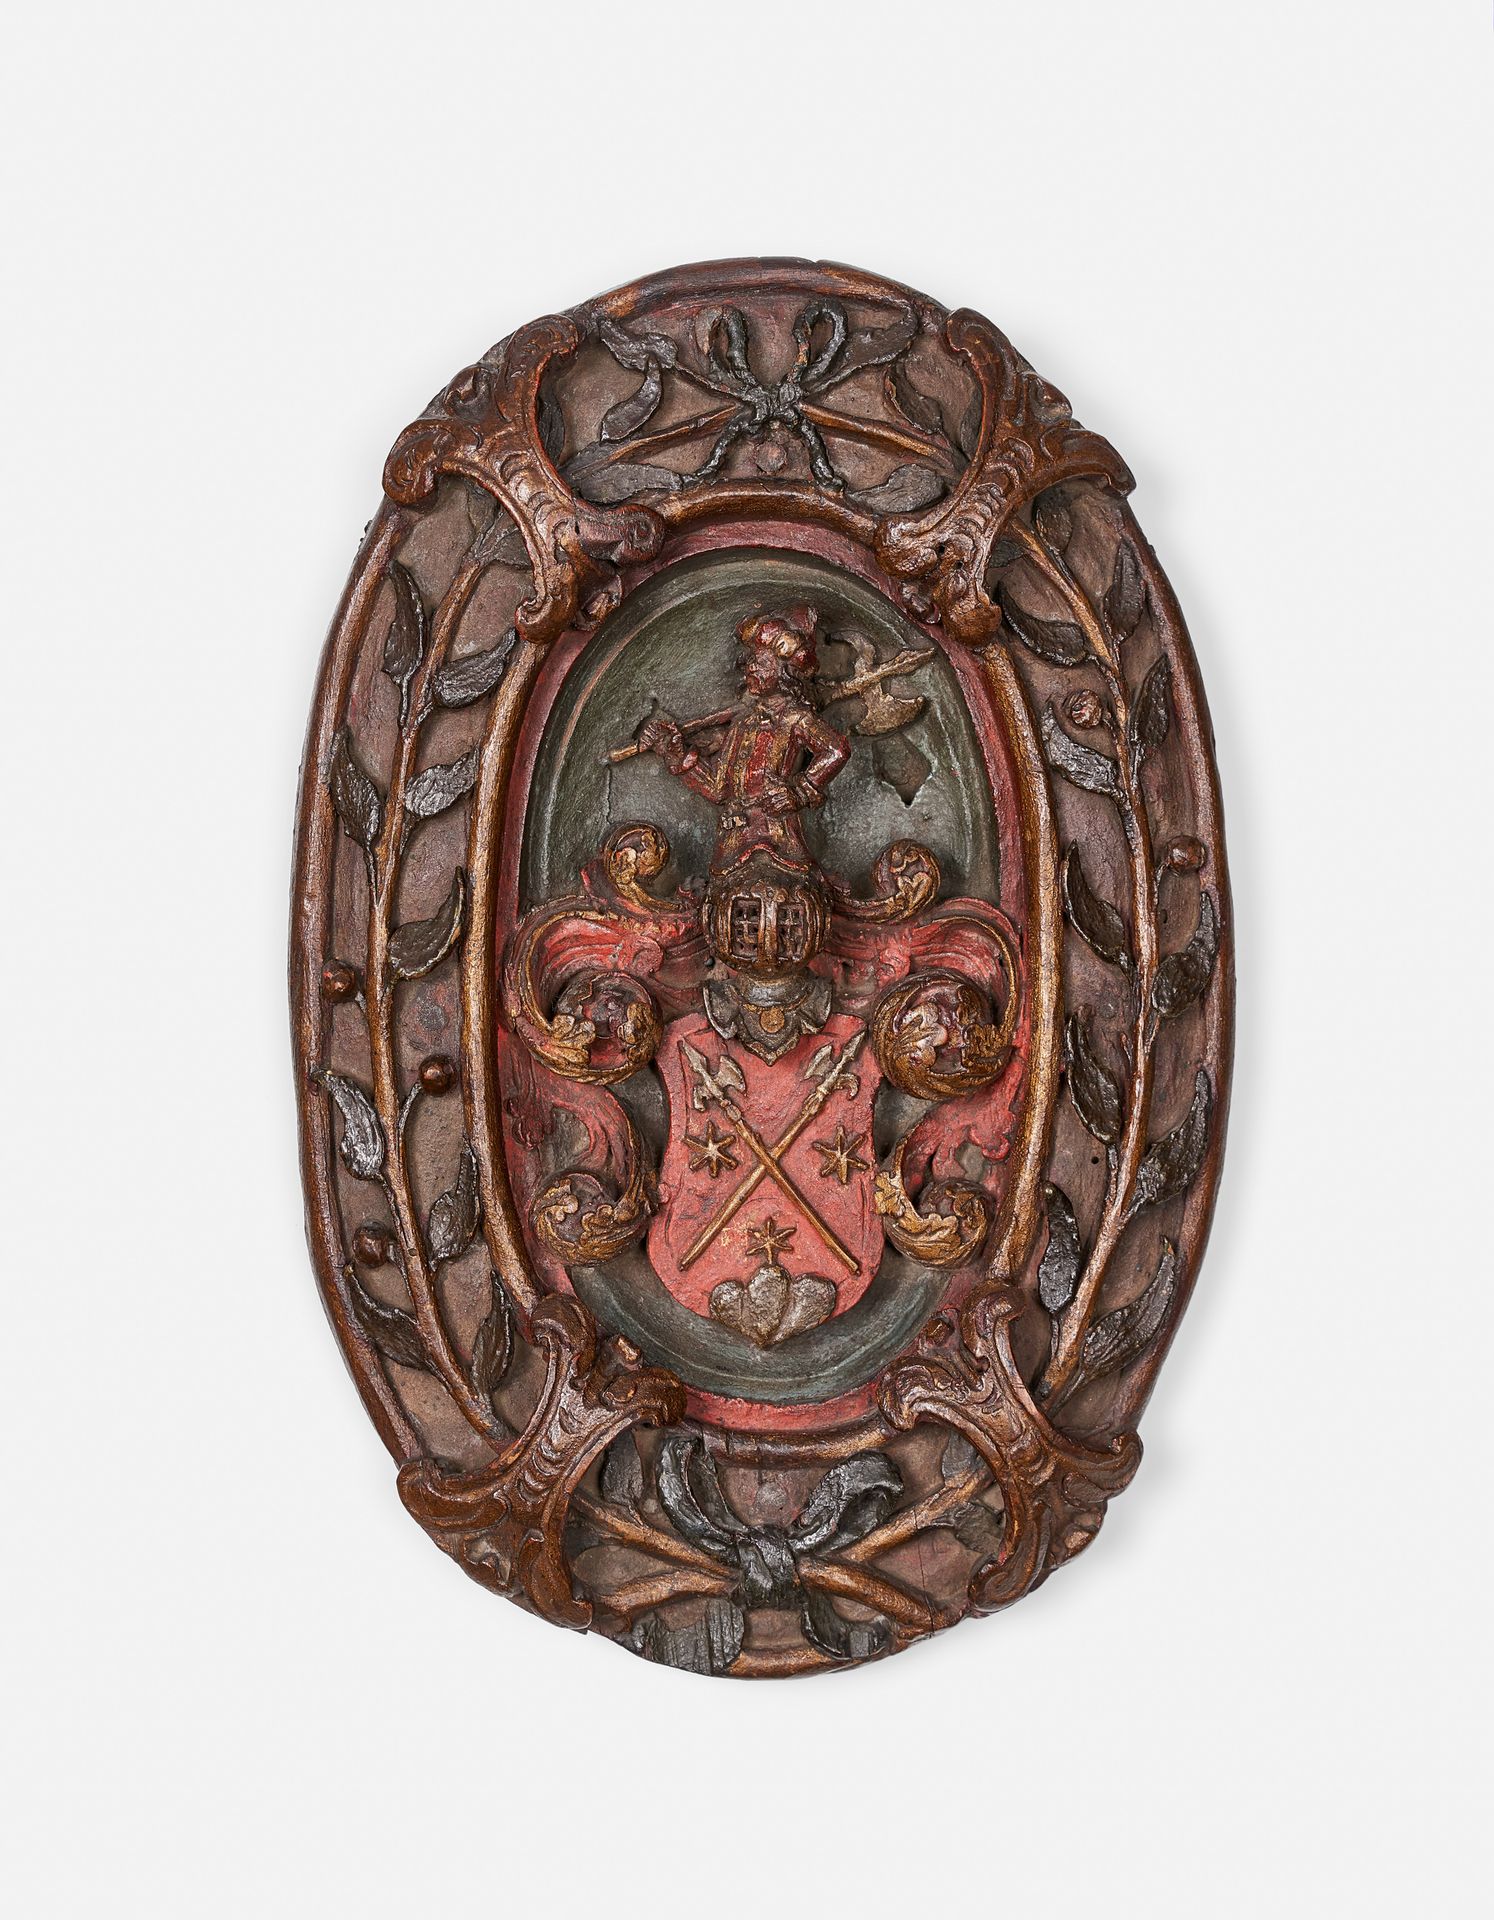 Null GESCHNEIDERTES SCHILD

Ende des 16. Jahrhunderts 

In Holz geschnitztes Hoc&hellip;